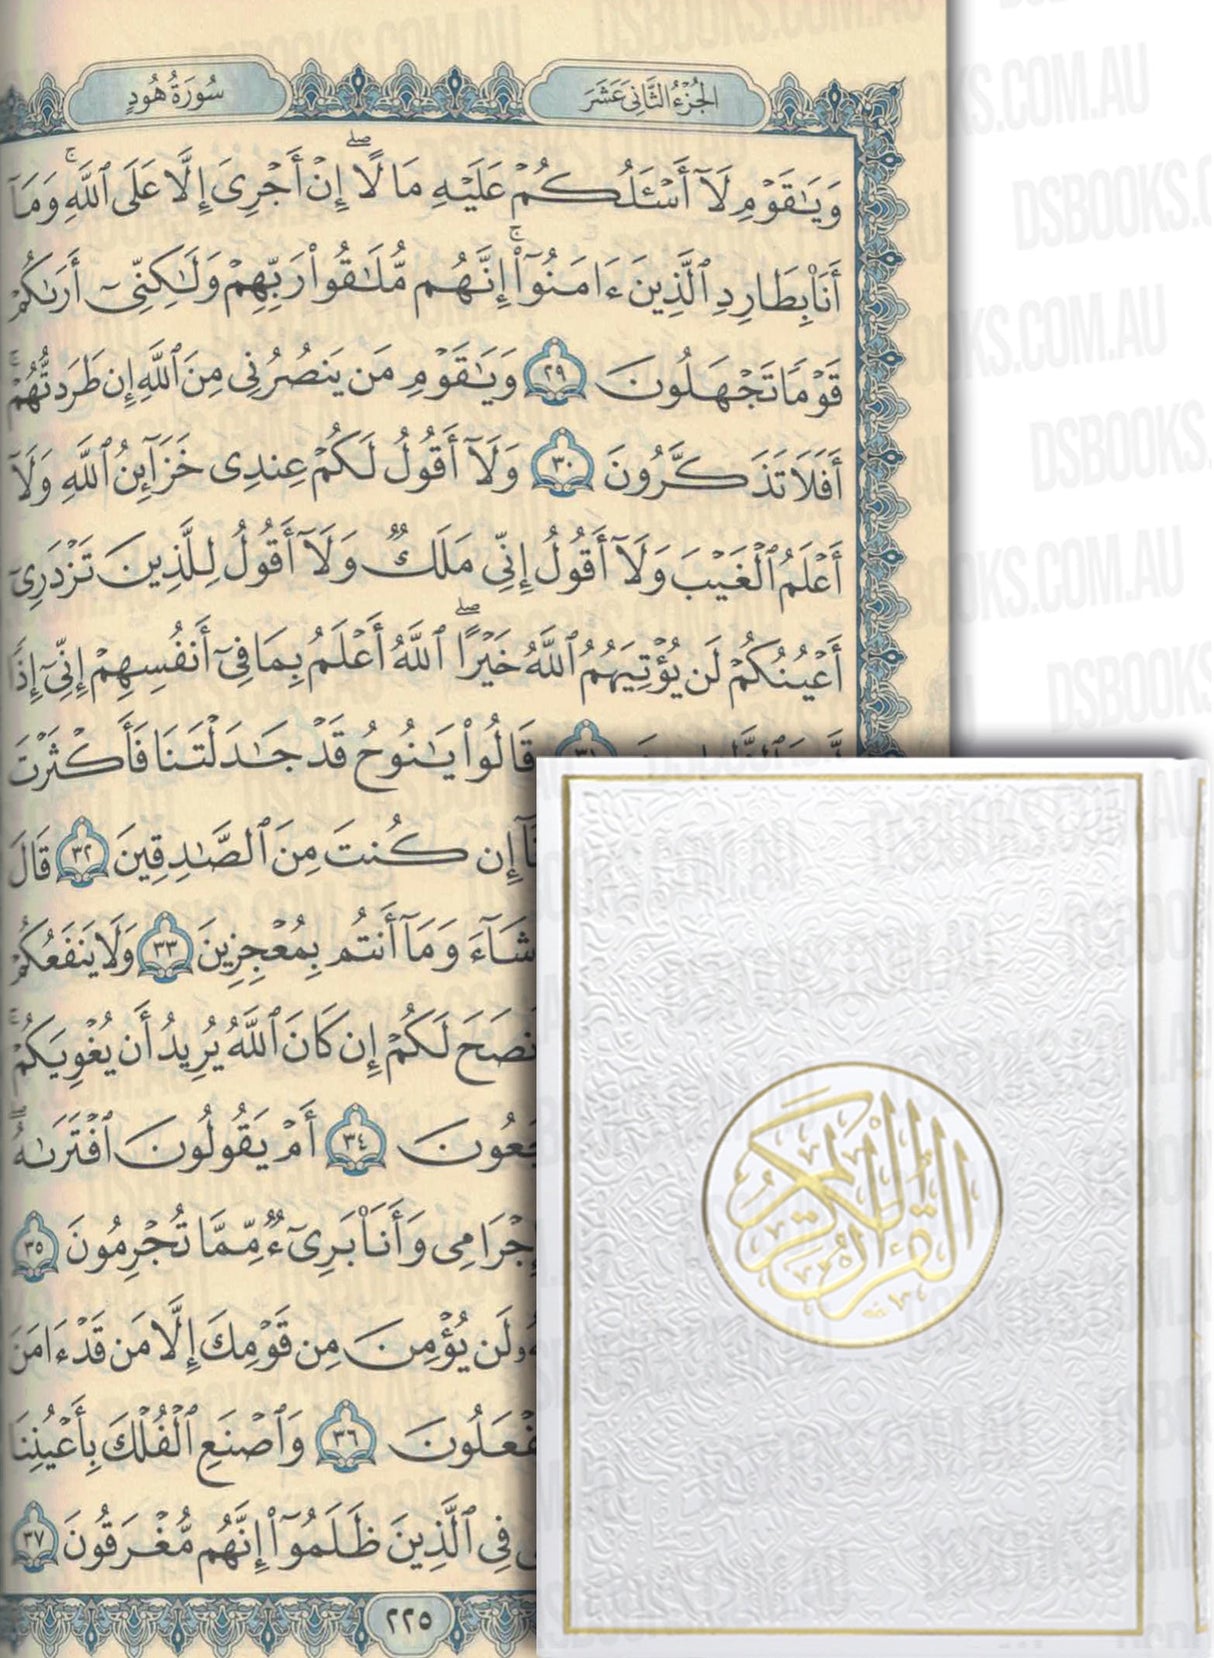 Quran 14.5x20.5cm A5 White/Gold